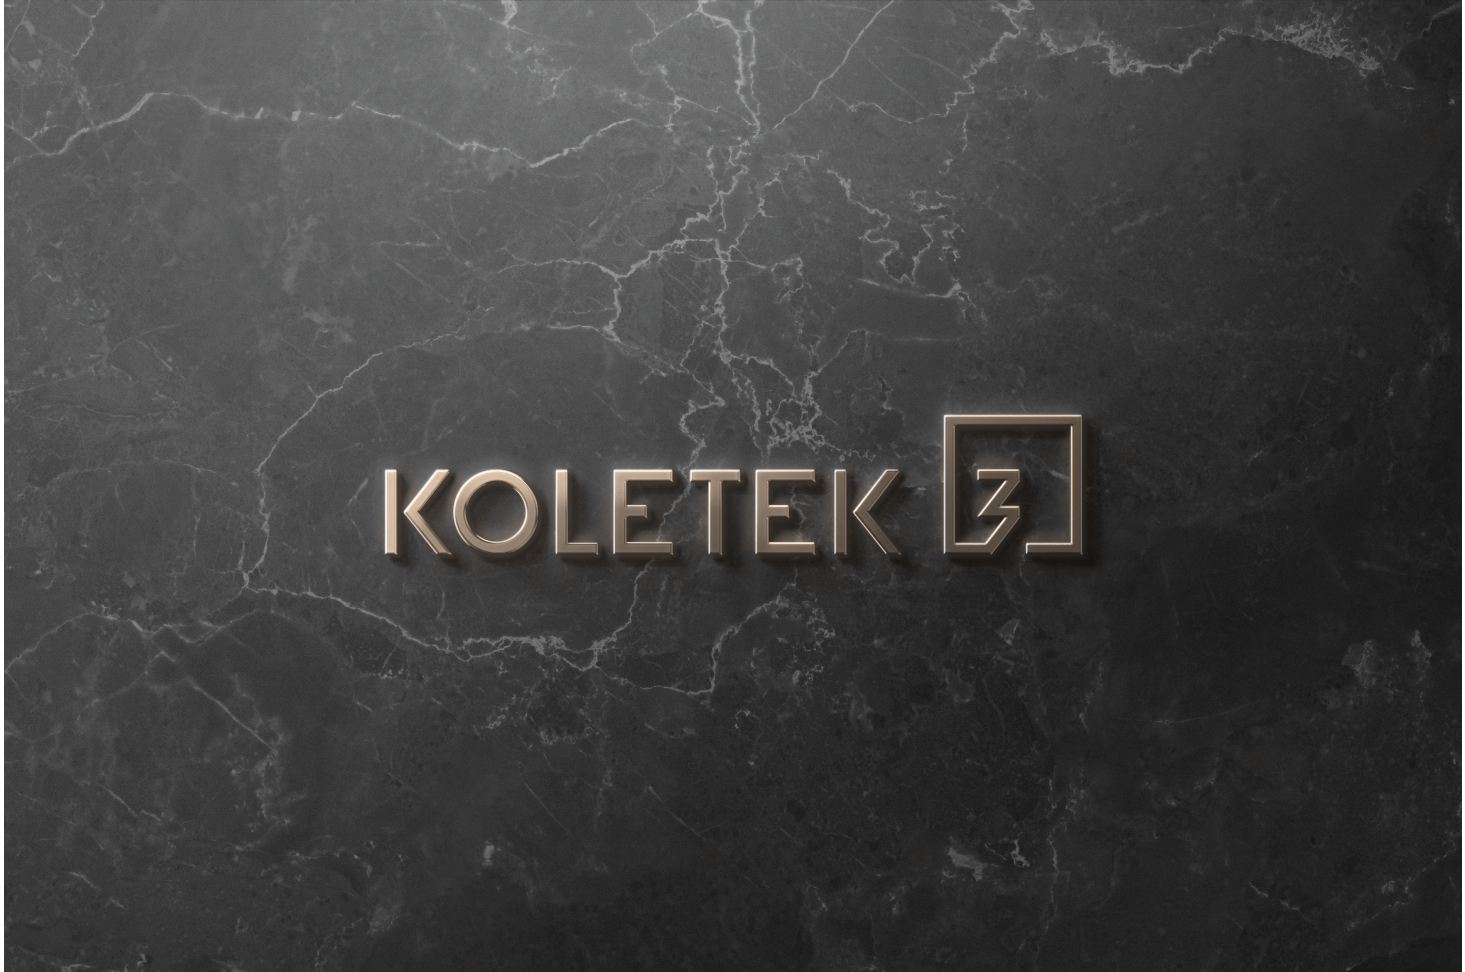 koletek3-logo7.png